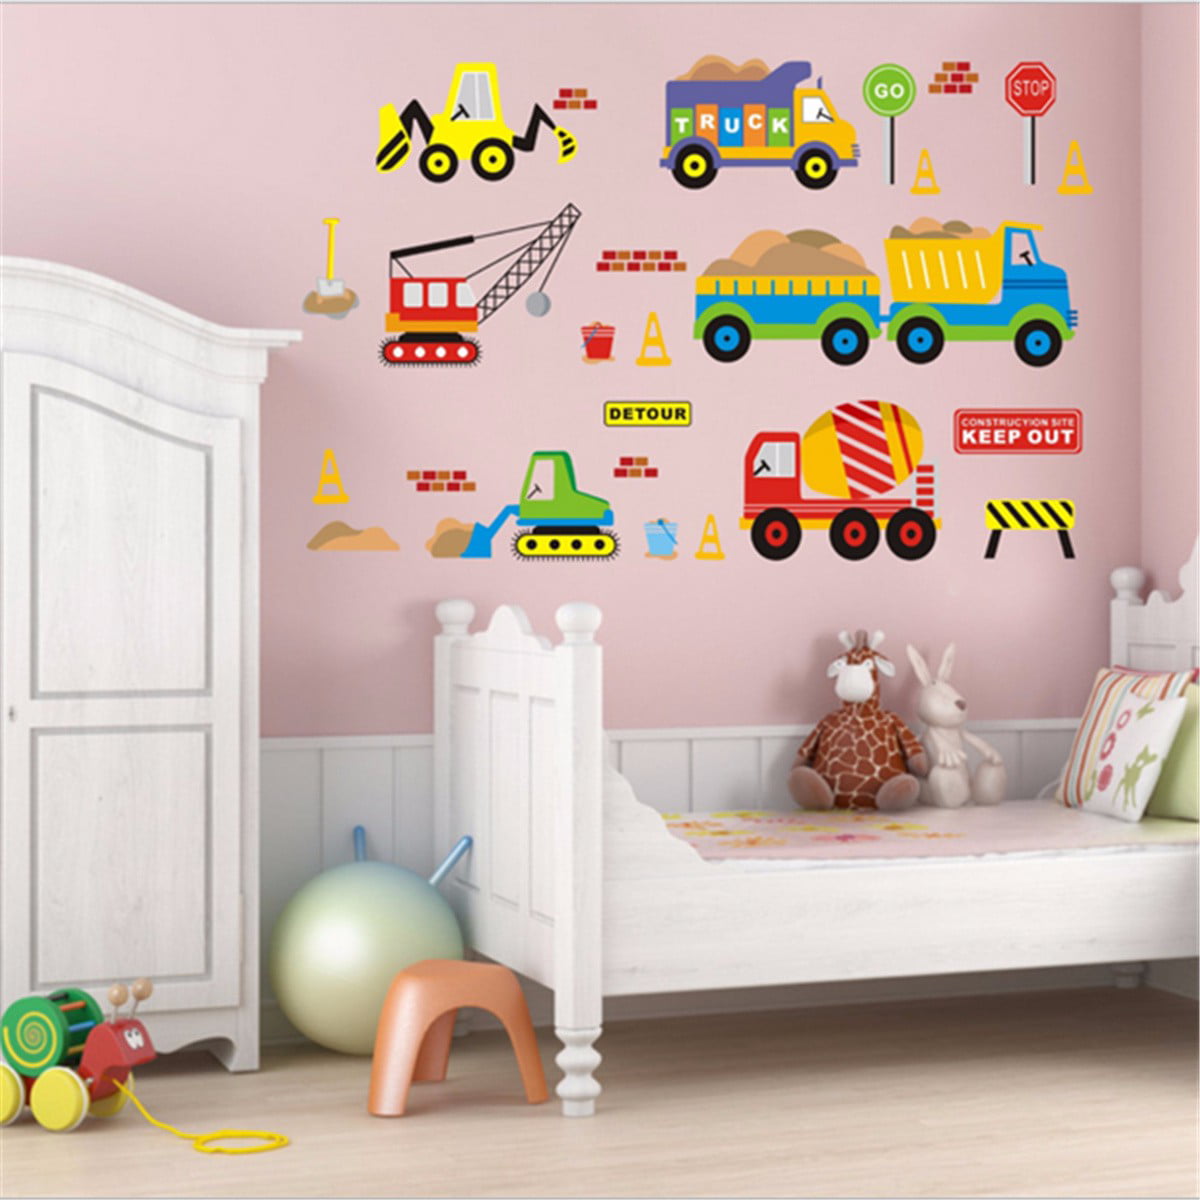 Toy Train Rail Road Wall Sticker Kids Children Home Room Vinyl Art Decals Decor